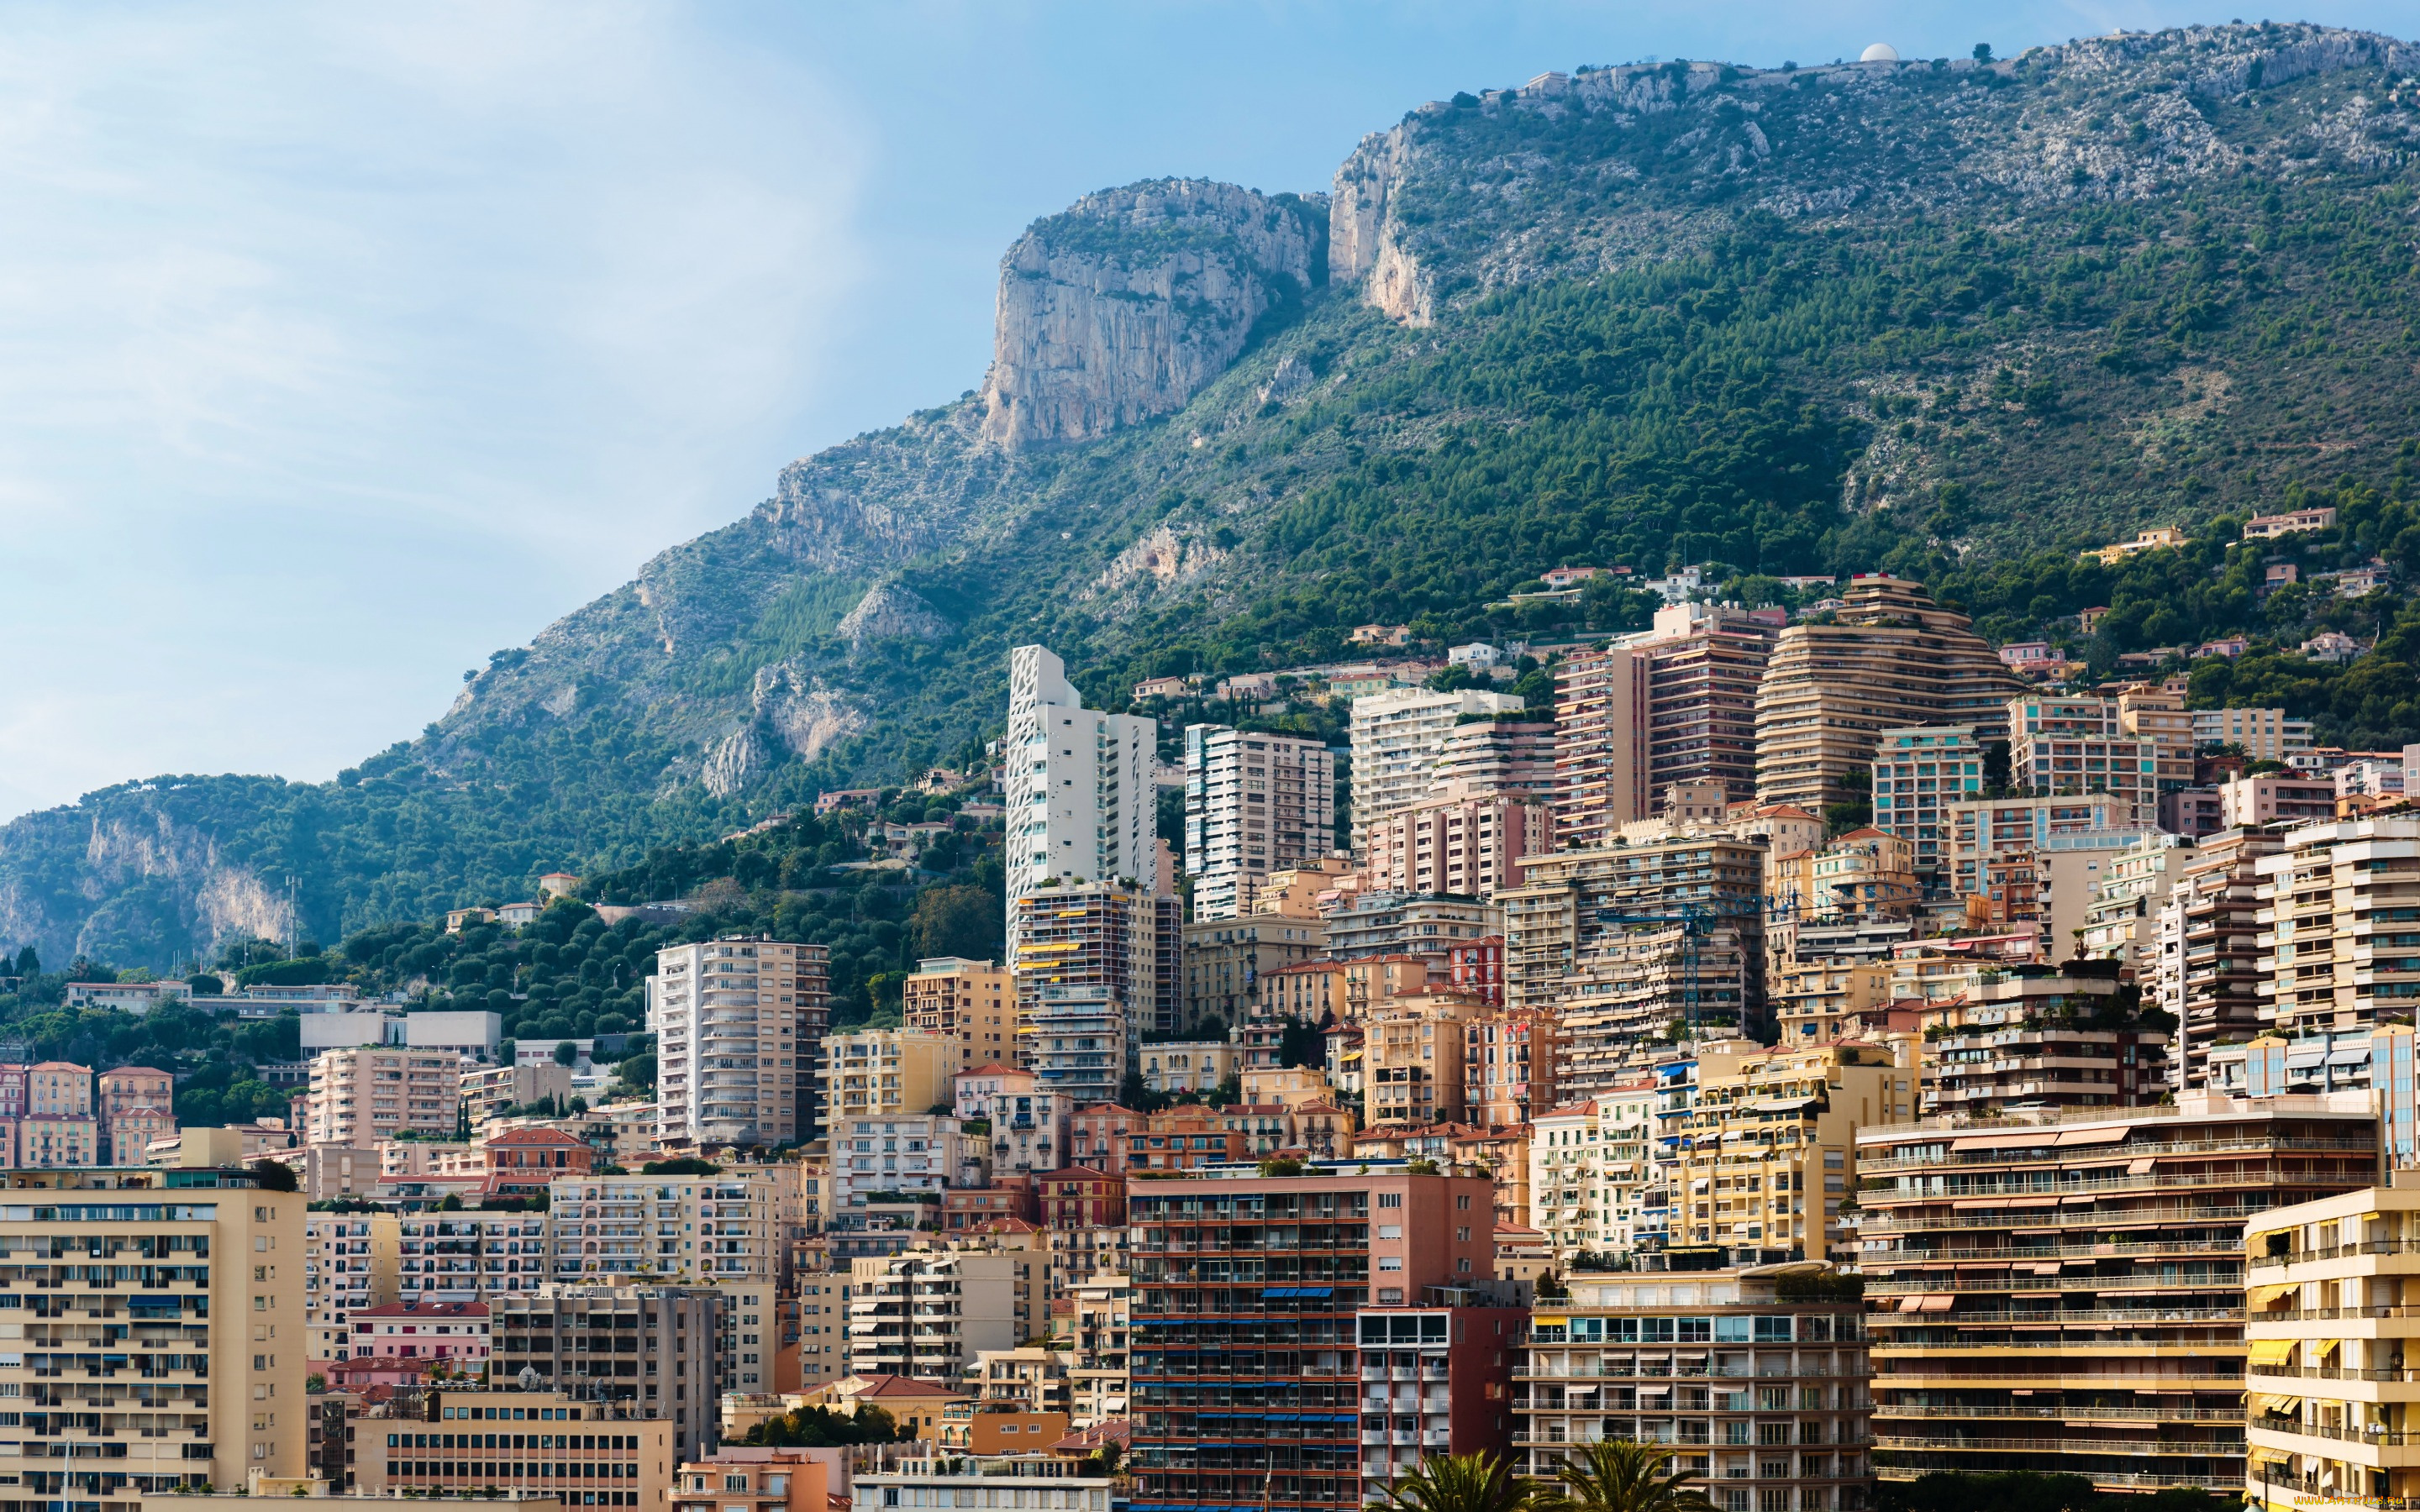 города, -, панорамы, пейзаж, скалы, горы, дома, monte, carlo, монако